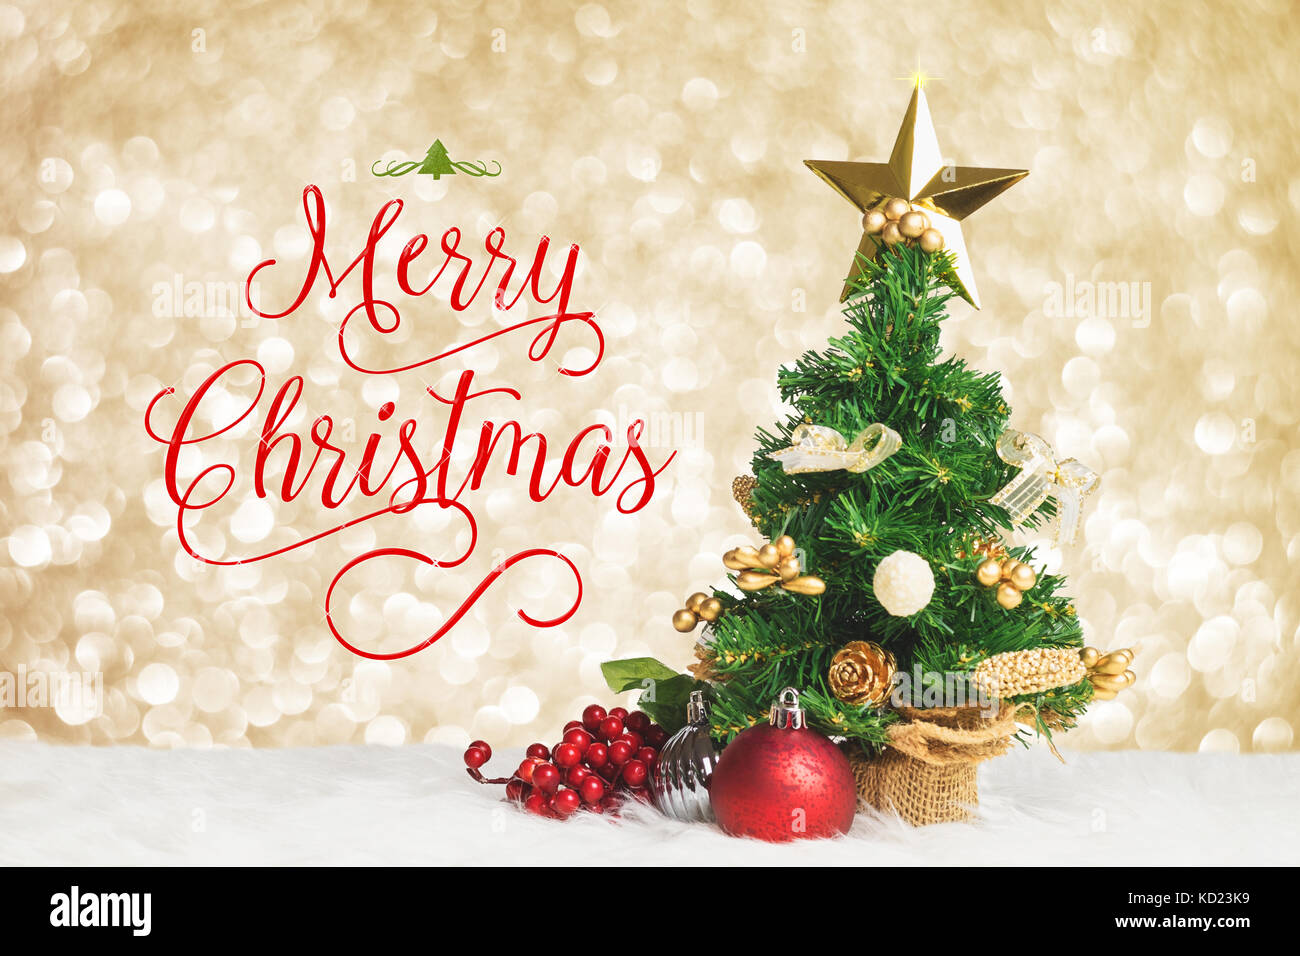 Buon Natale lavorare con albero di natale con la ciliegia e la sfera decorare sul pelo bianco con argento dorato bokeh sparkle sfondo luminoso,holiday greeting card Foto Stock